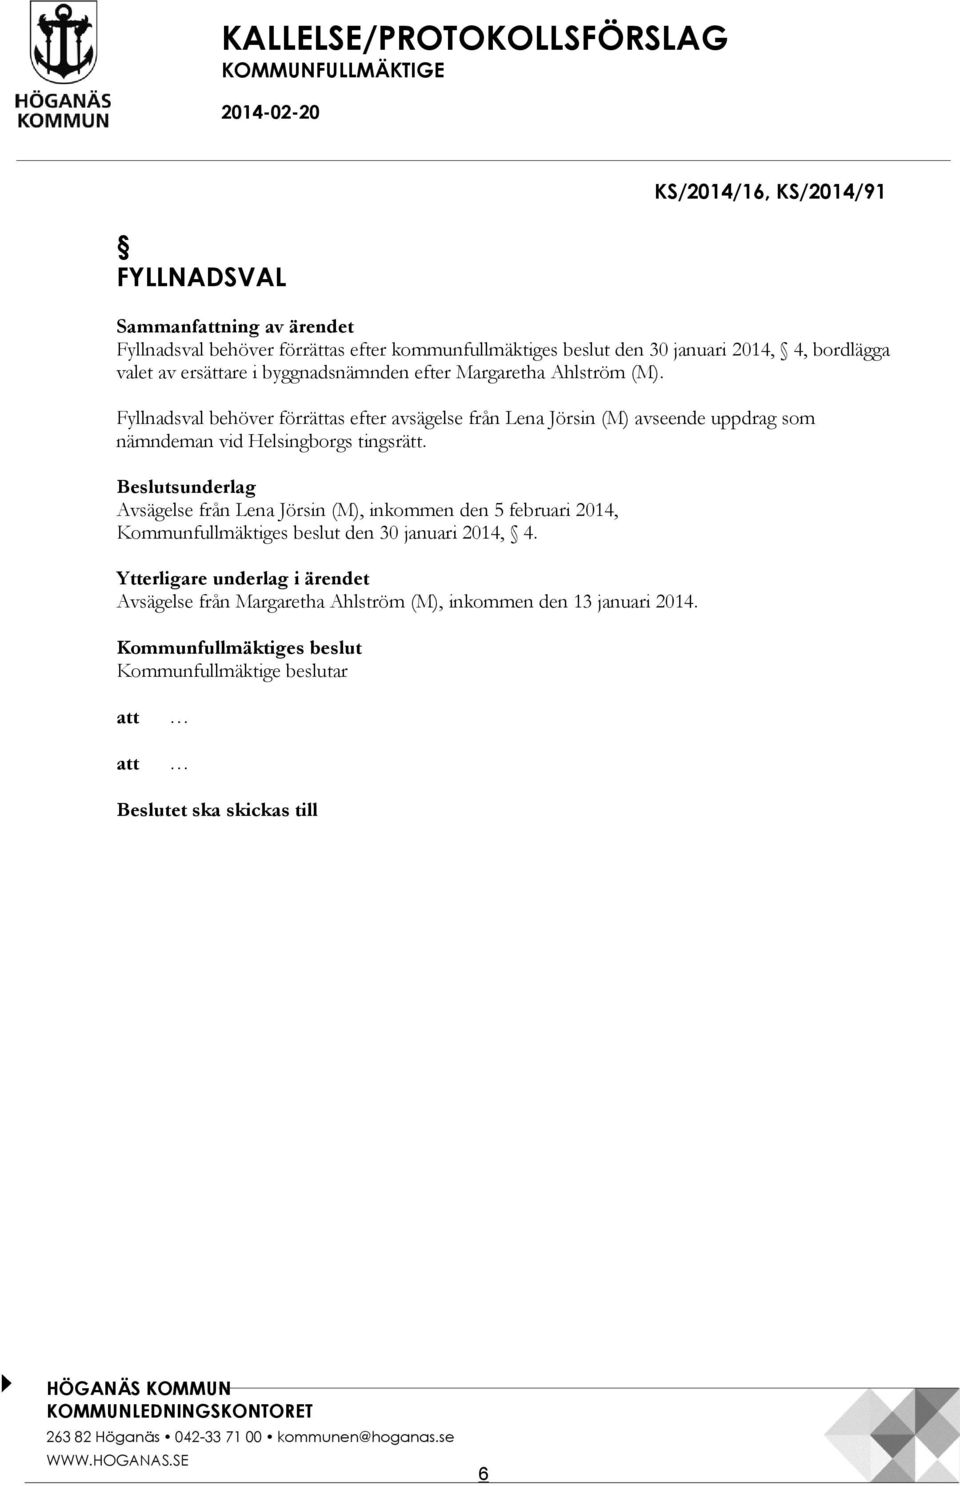 Fyllnadsval behöver förrättas efter avsägelse från Lena Jörsin (M) avseende uppdrag som nämndeman vid Helsingborgs tingsrätt.